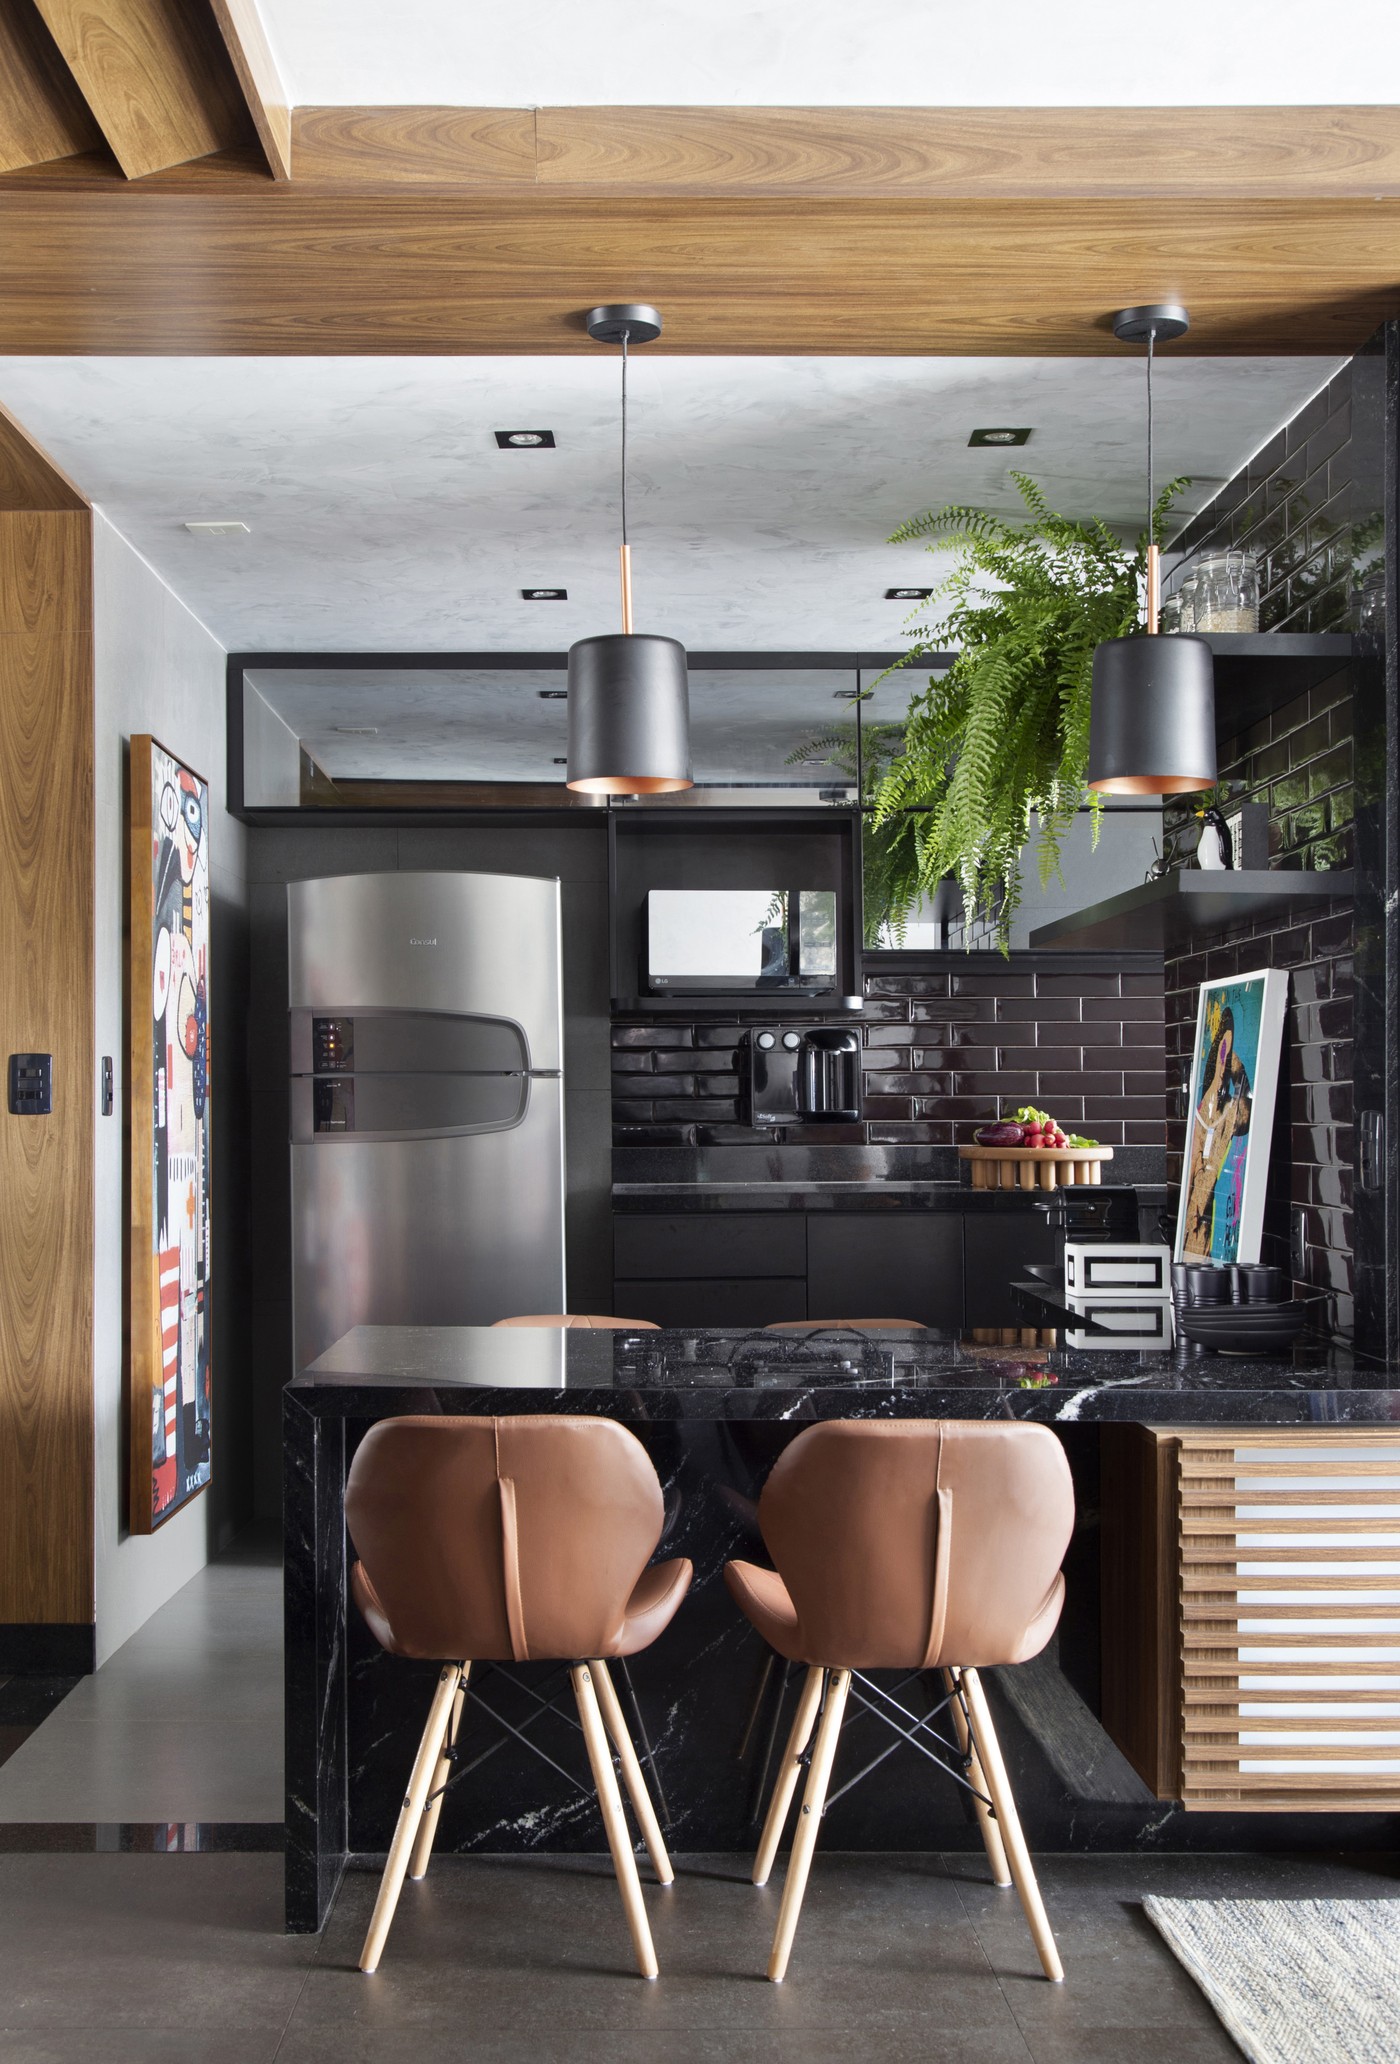 Décor do dia: cozinha com armários pretos, azulejos de metrô e bancada (Foto: Raiana Medina)